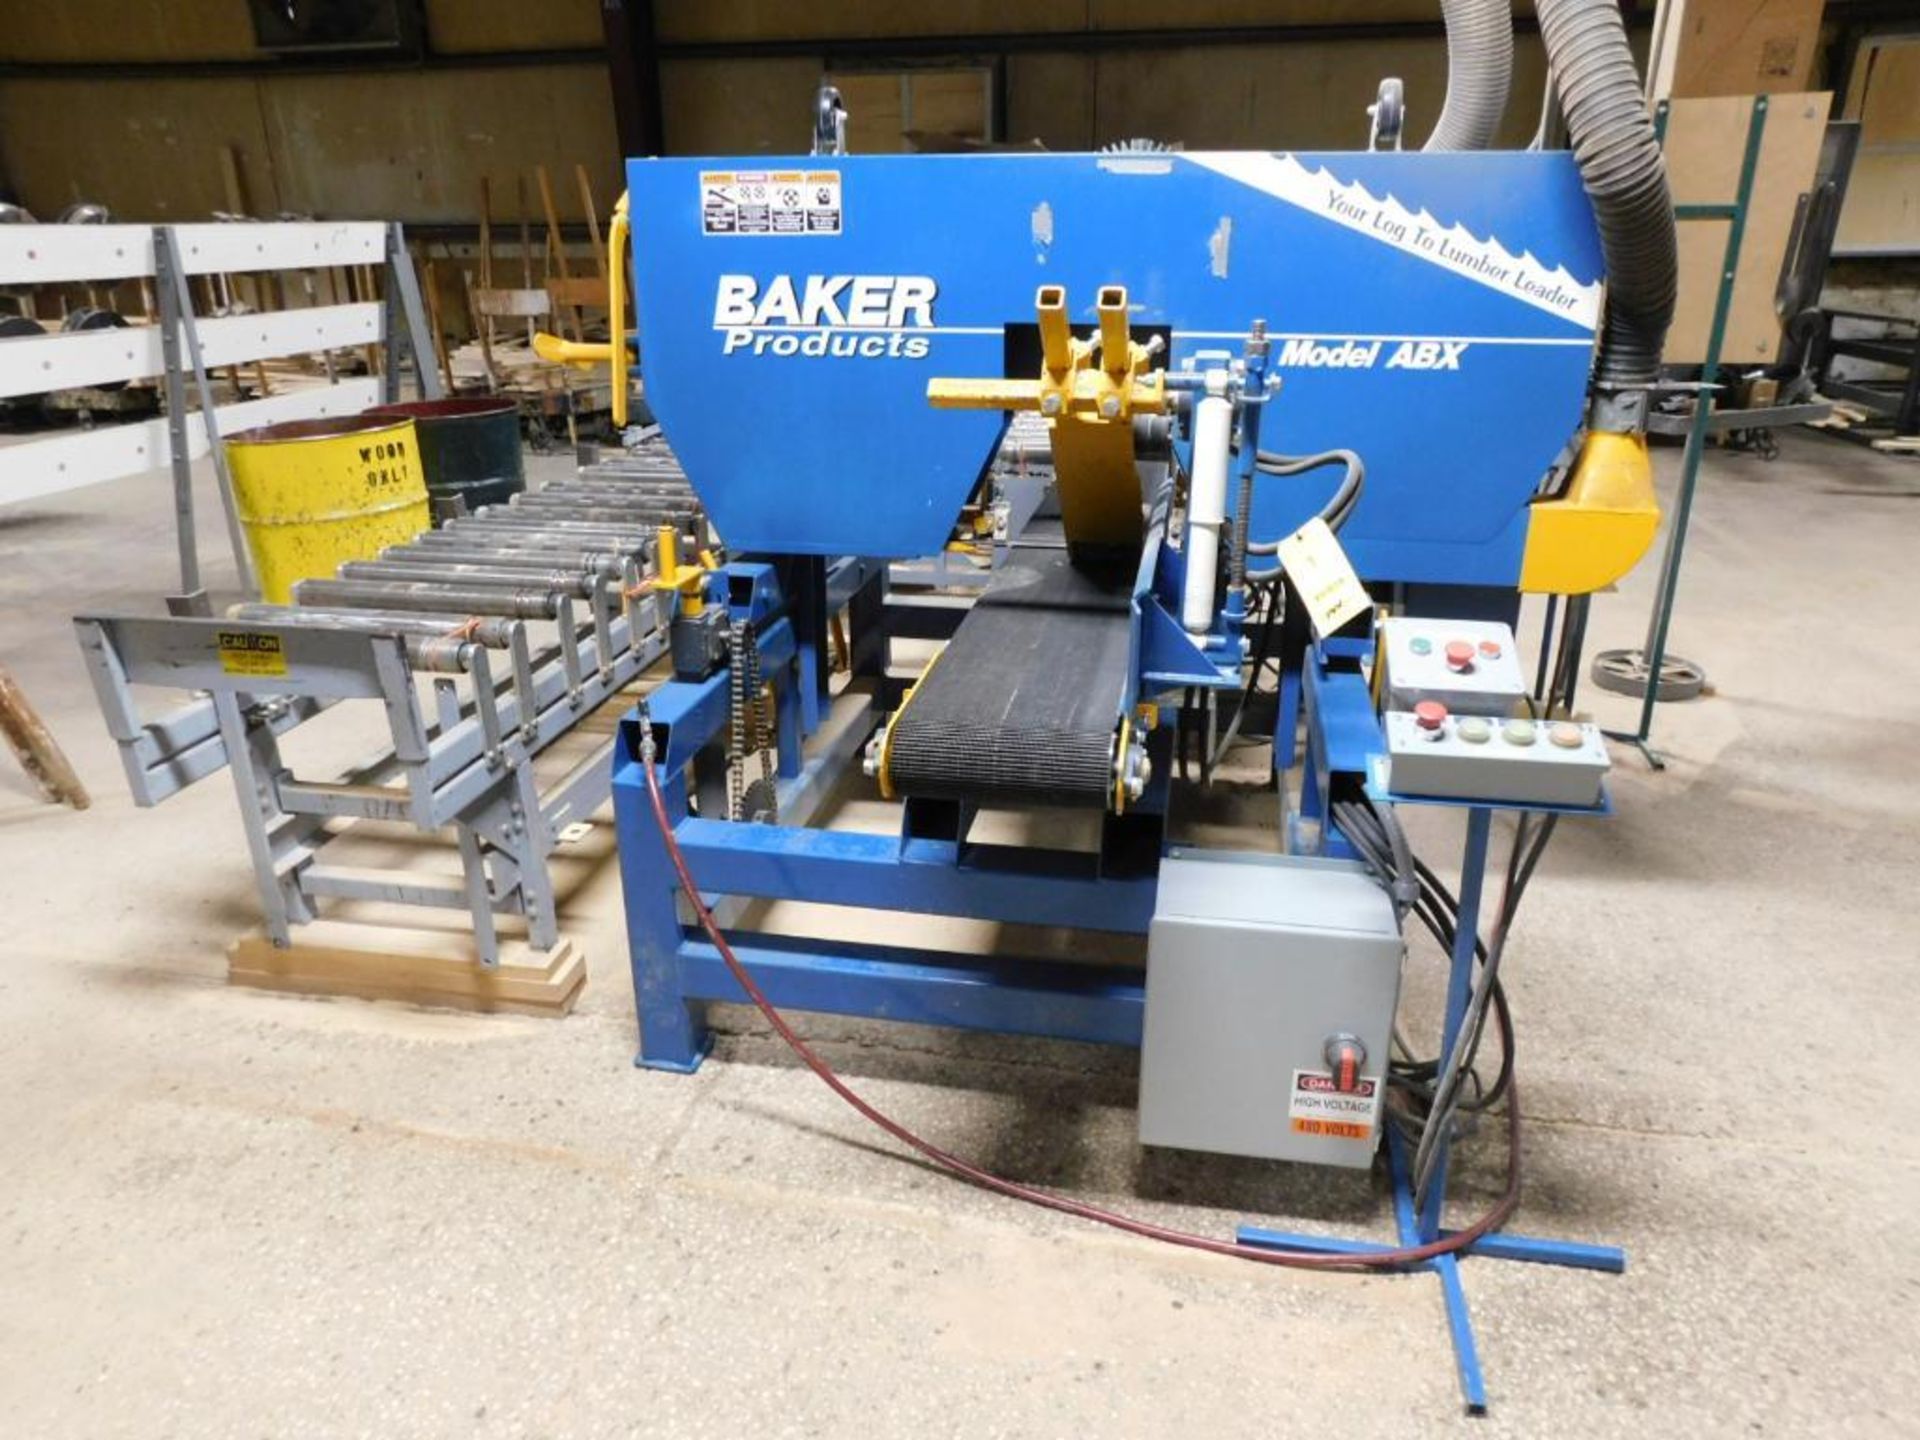 Baker Products Single Head Resaw, Model ABX-BBR-O, S/N 07-3940 (2017), 11-1/2" Belt Conveyor, Cross